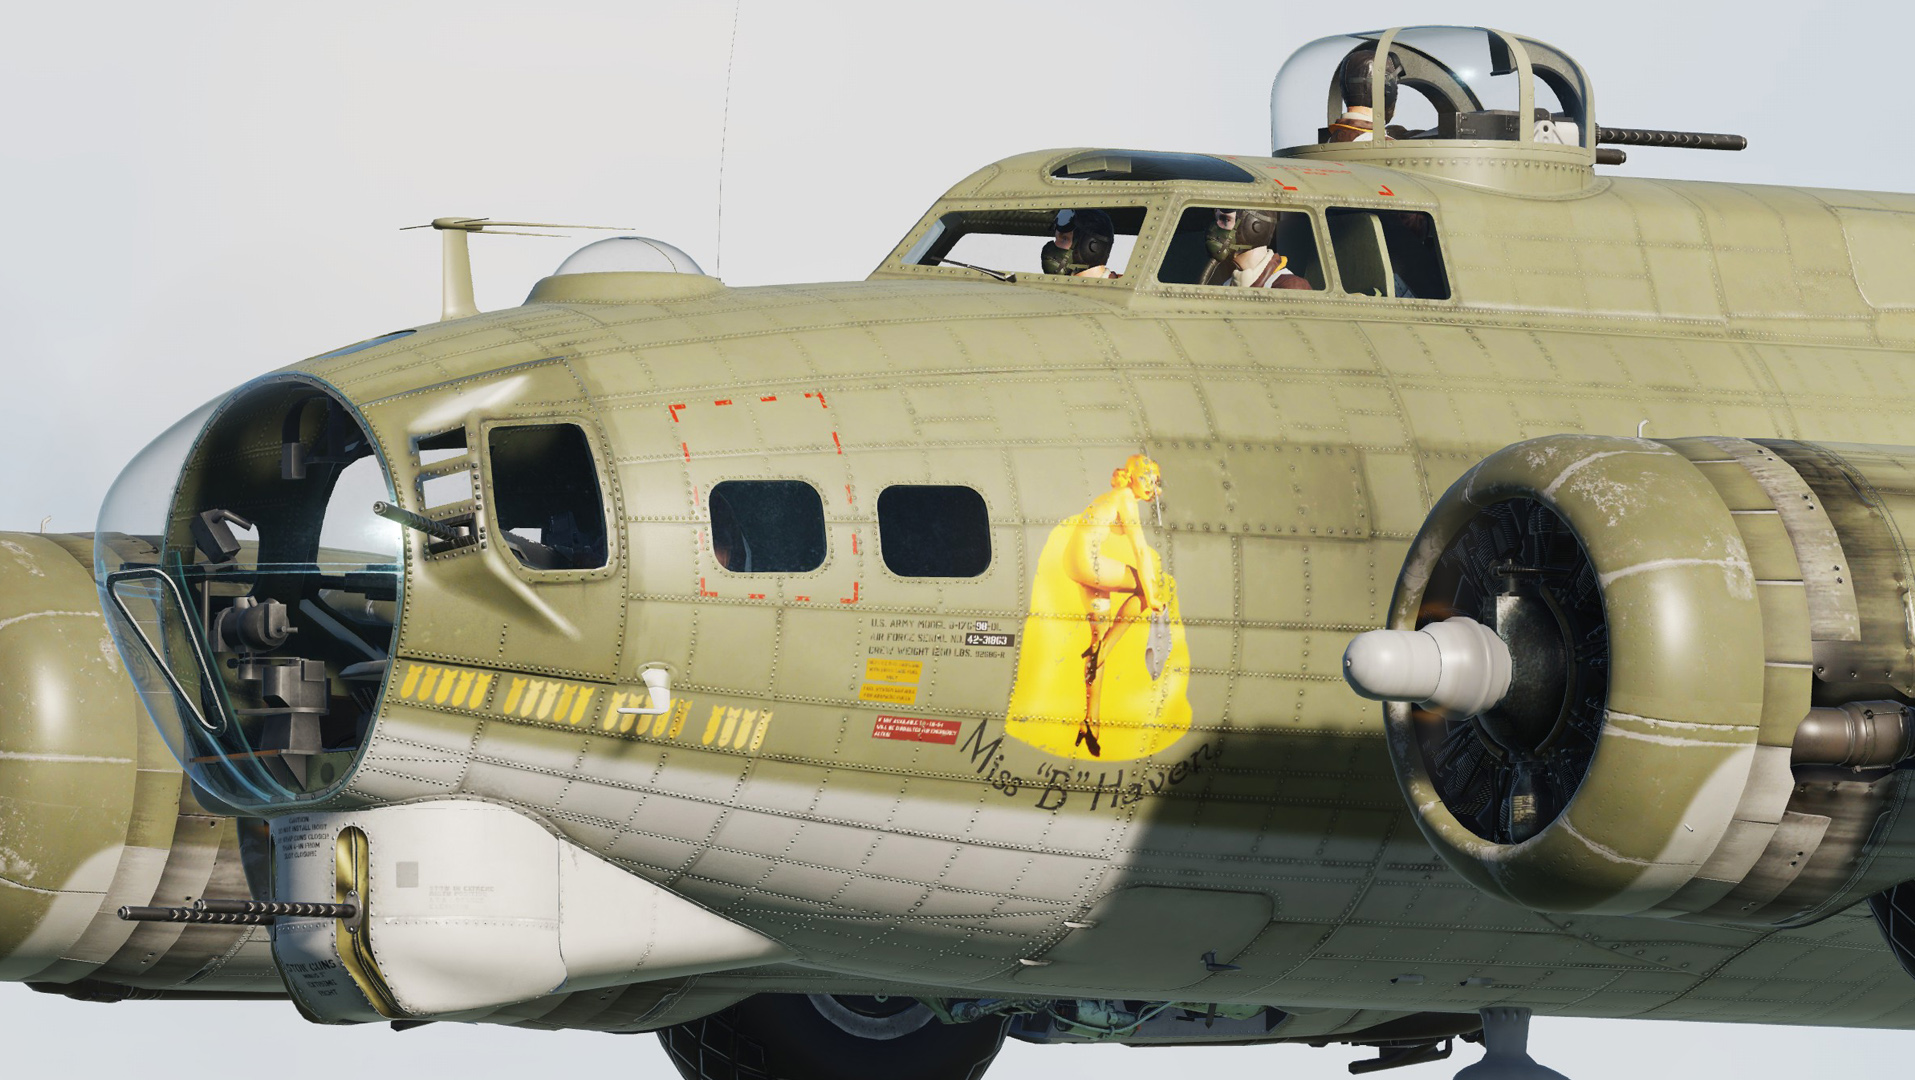 B-17G 42-31863 “Miss B Haven”